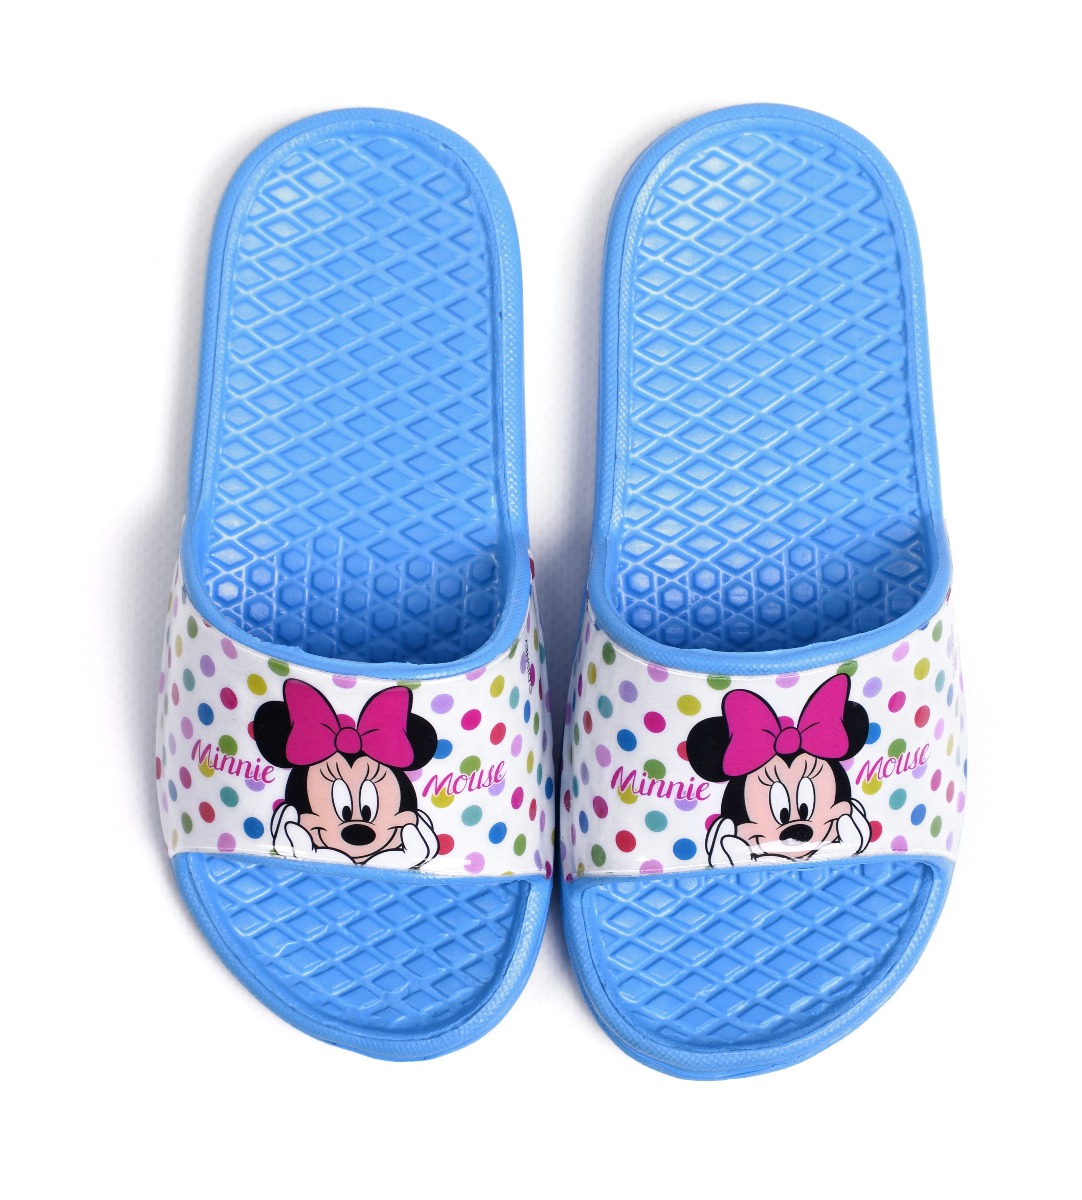 Гумові шльопанці ''Minnie Mouse'' для дівчинки, DIS MF 52 51 9347 (блакитні)